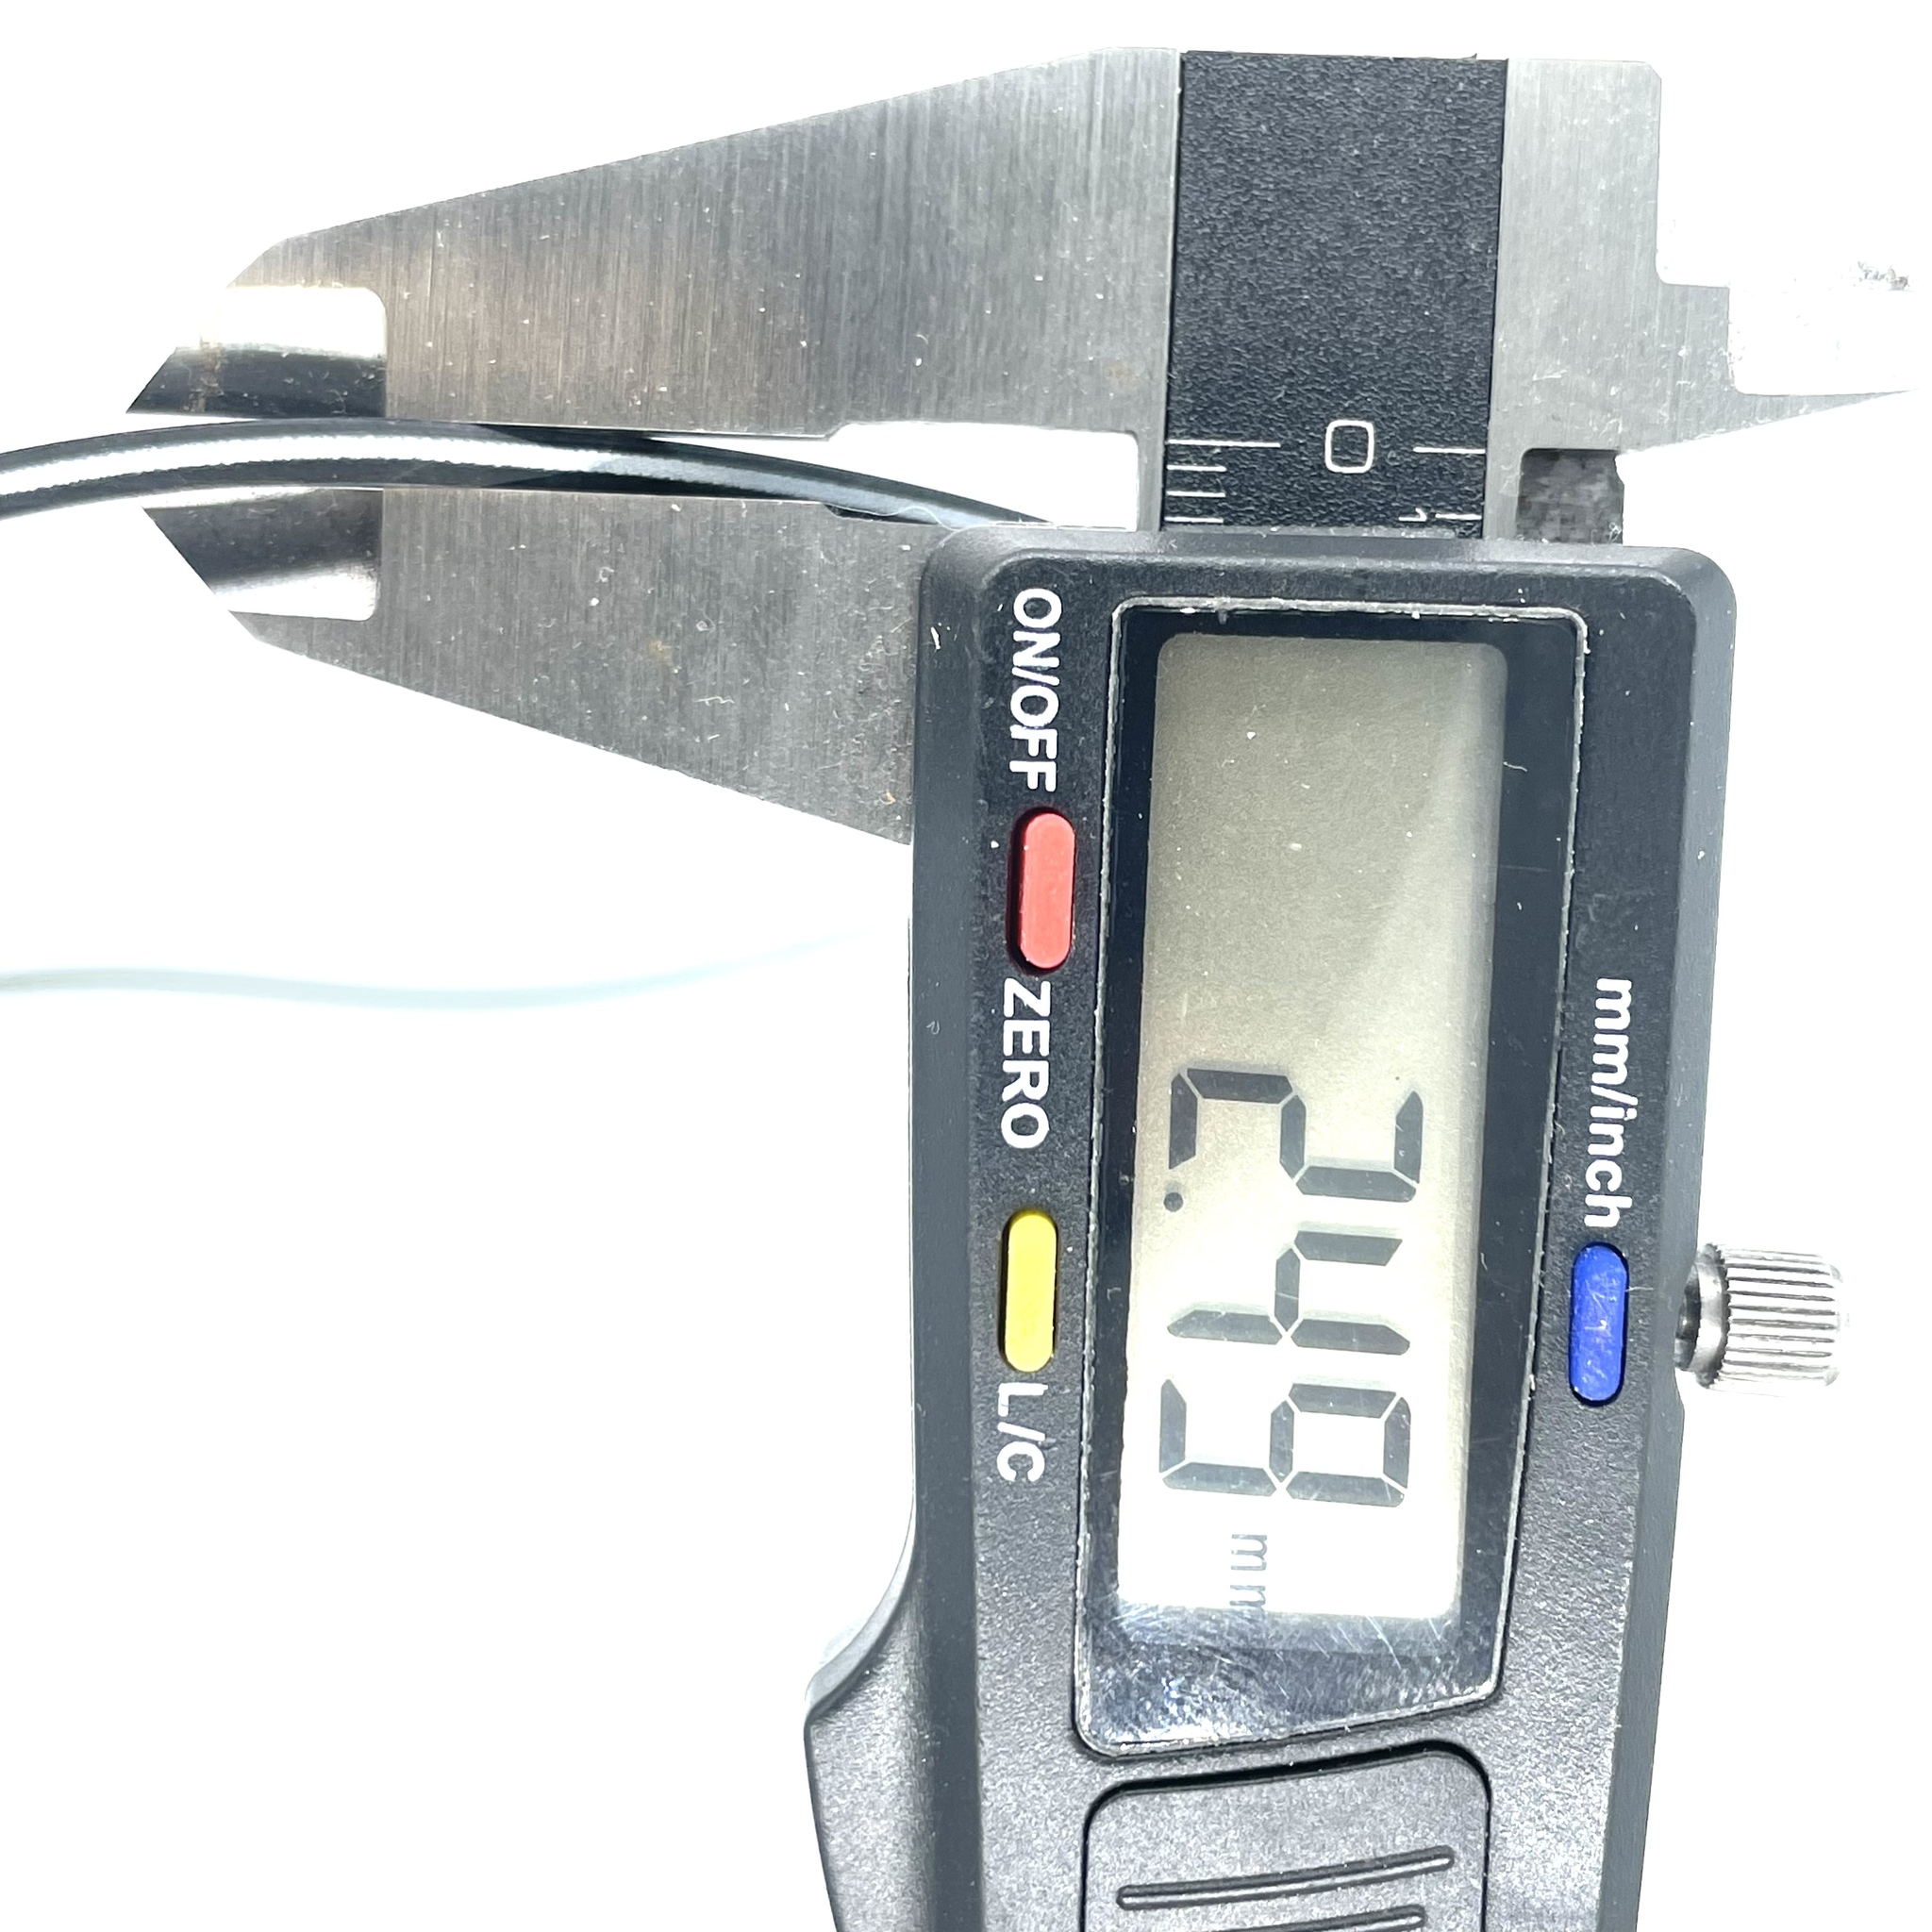 TH400/TH350 Lathe cut seal,pump to case